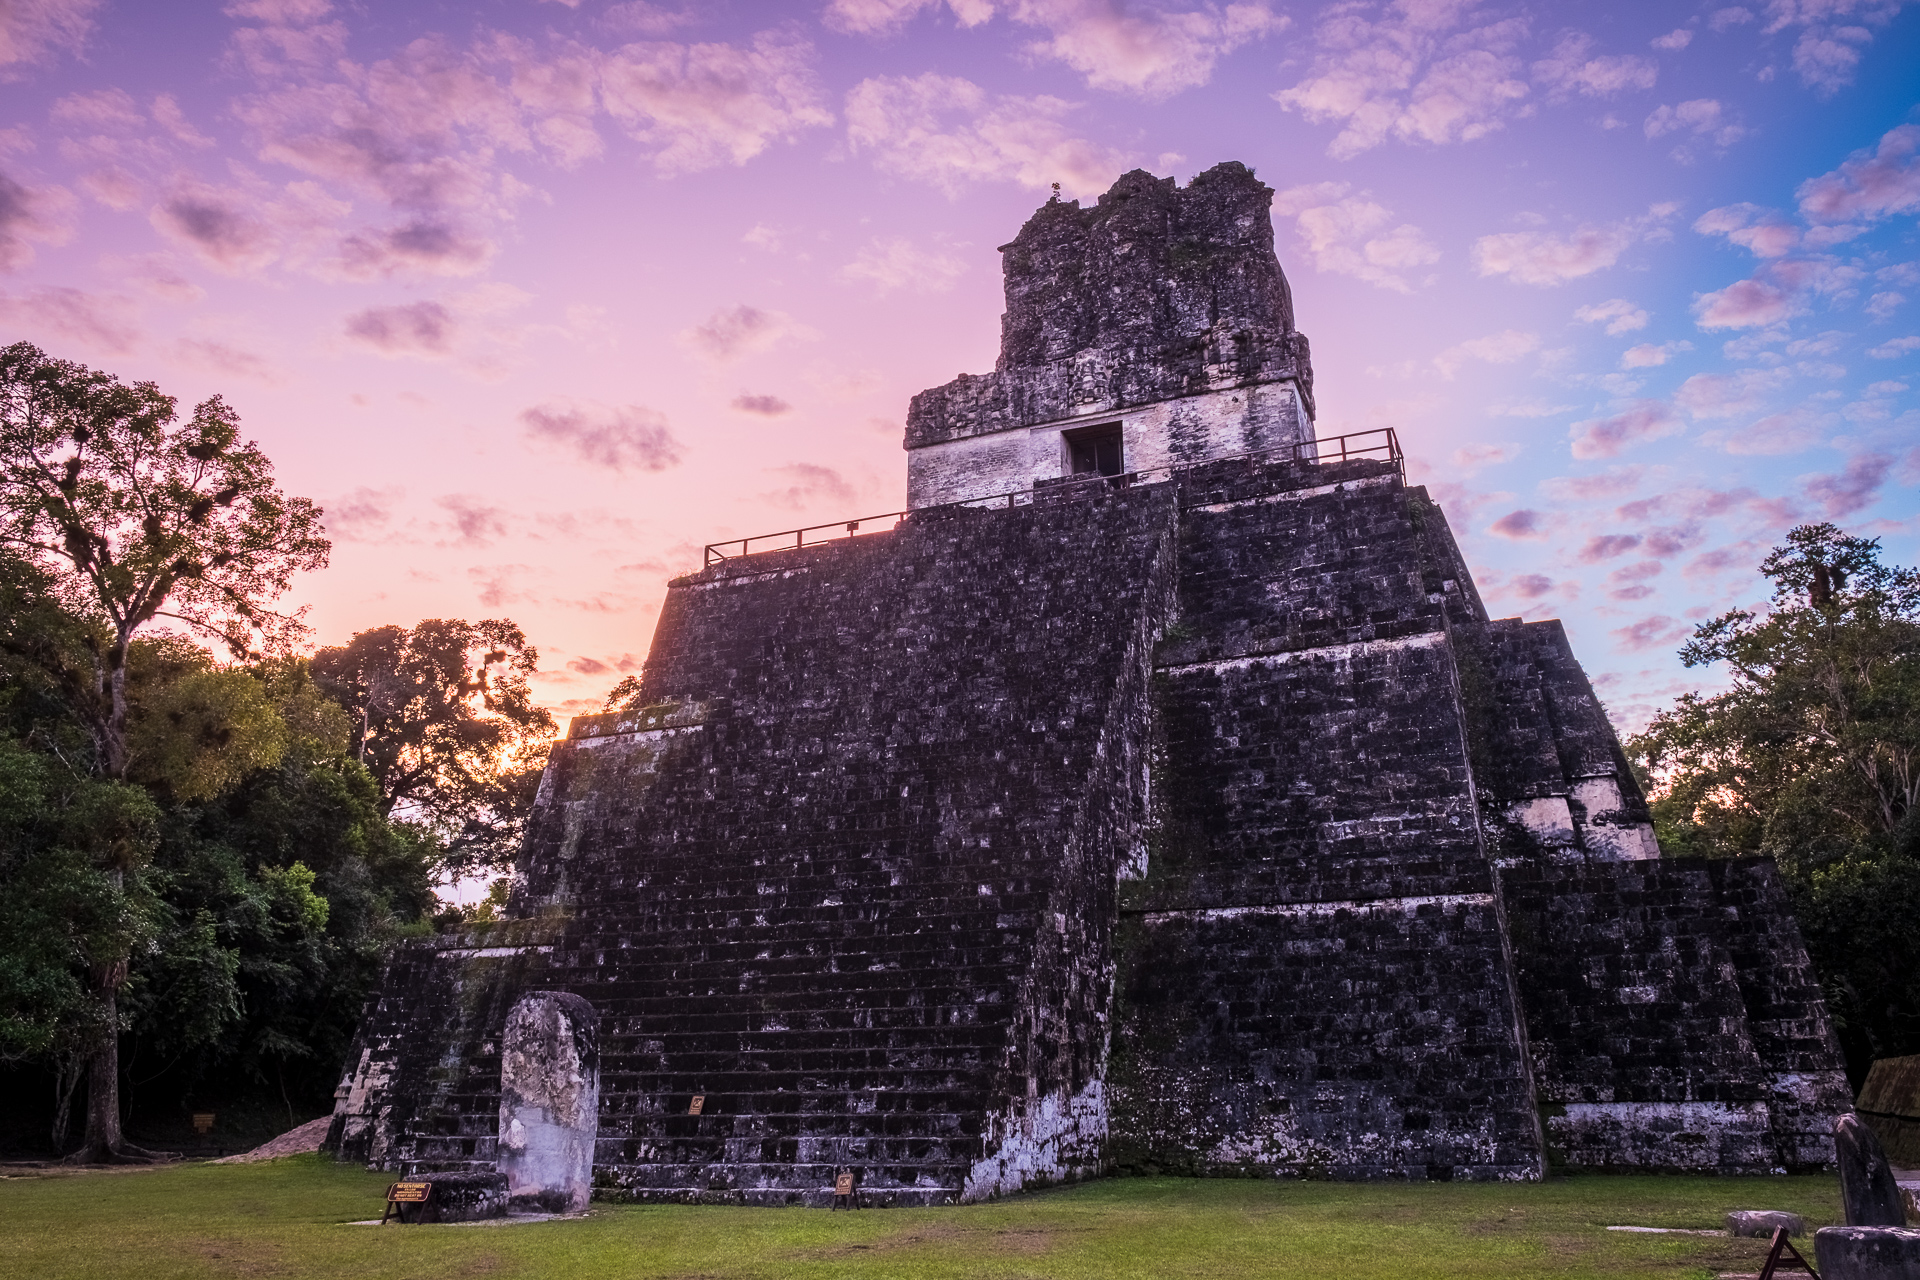 Sunset at Tikal Ruins in Guatemala.